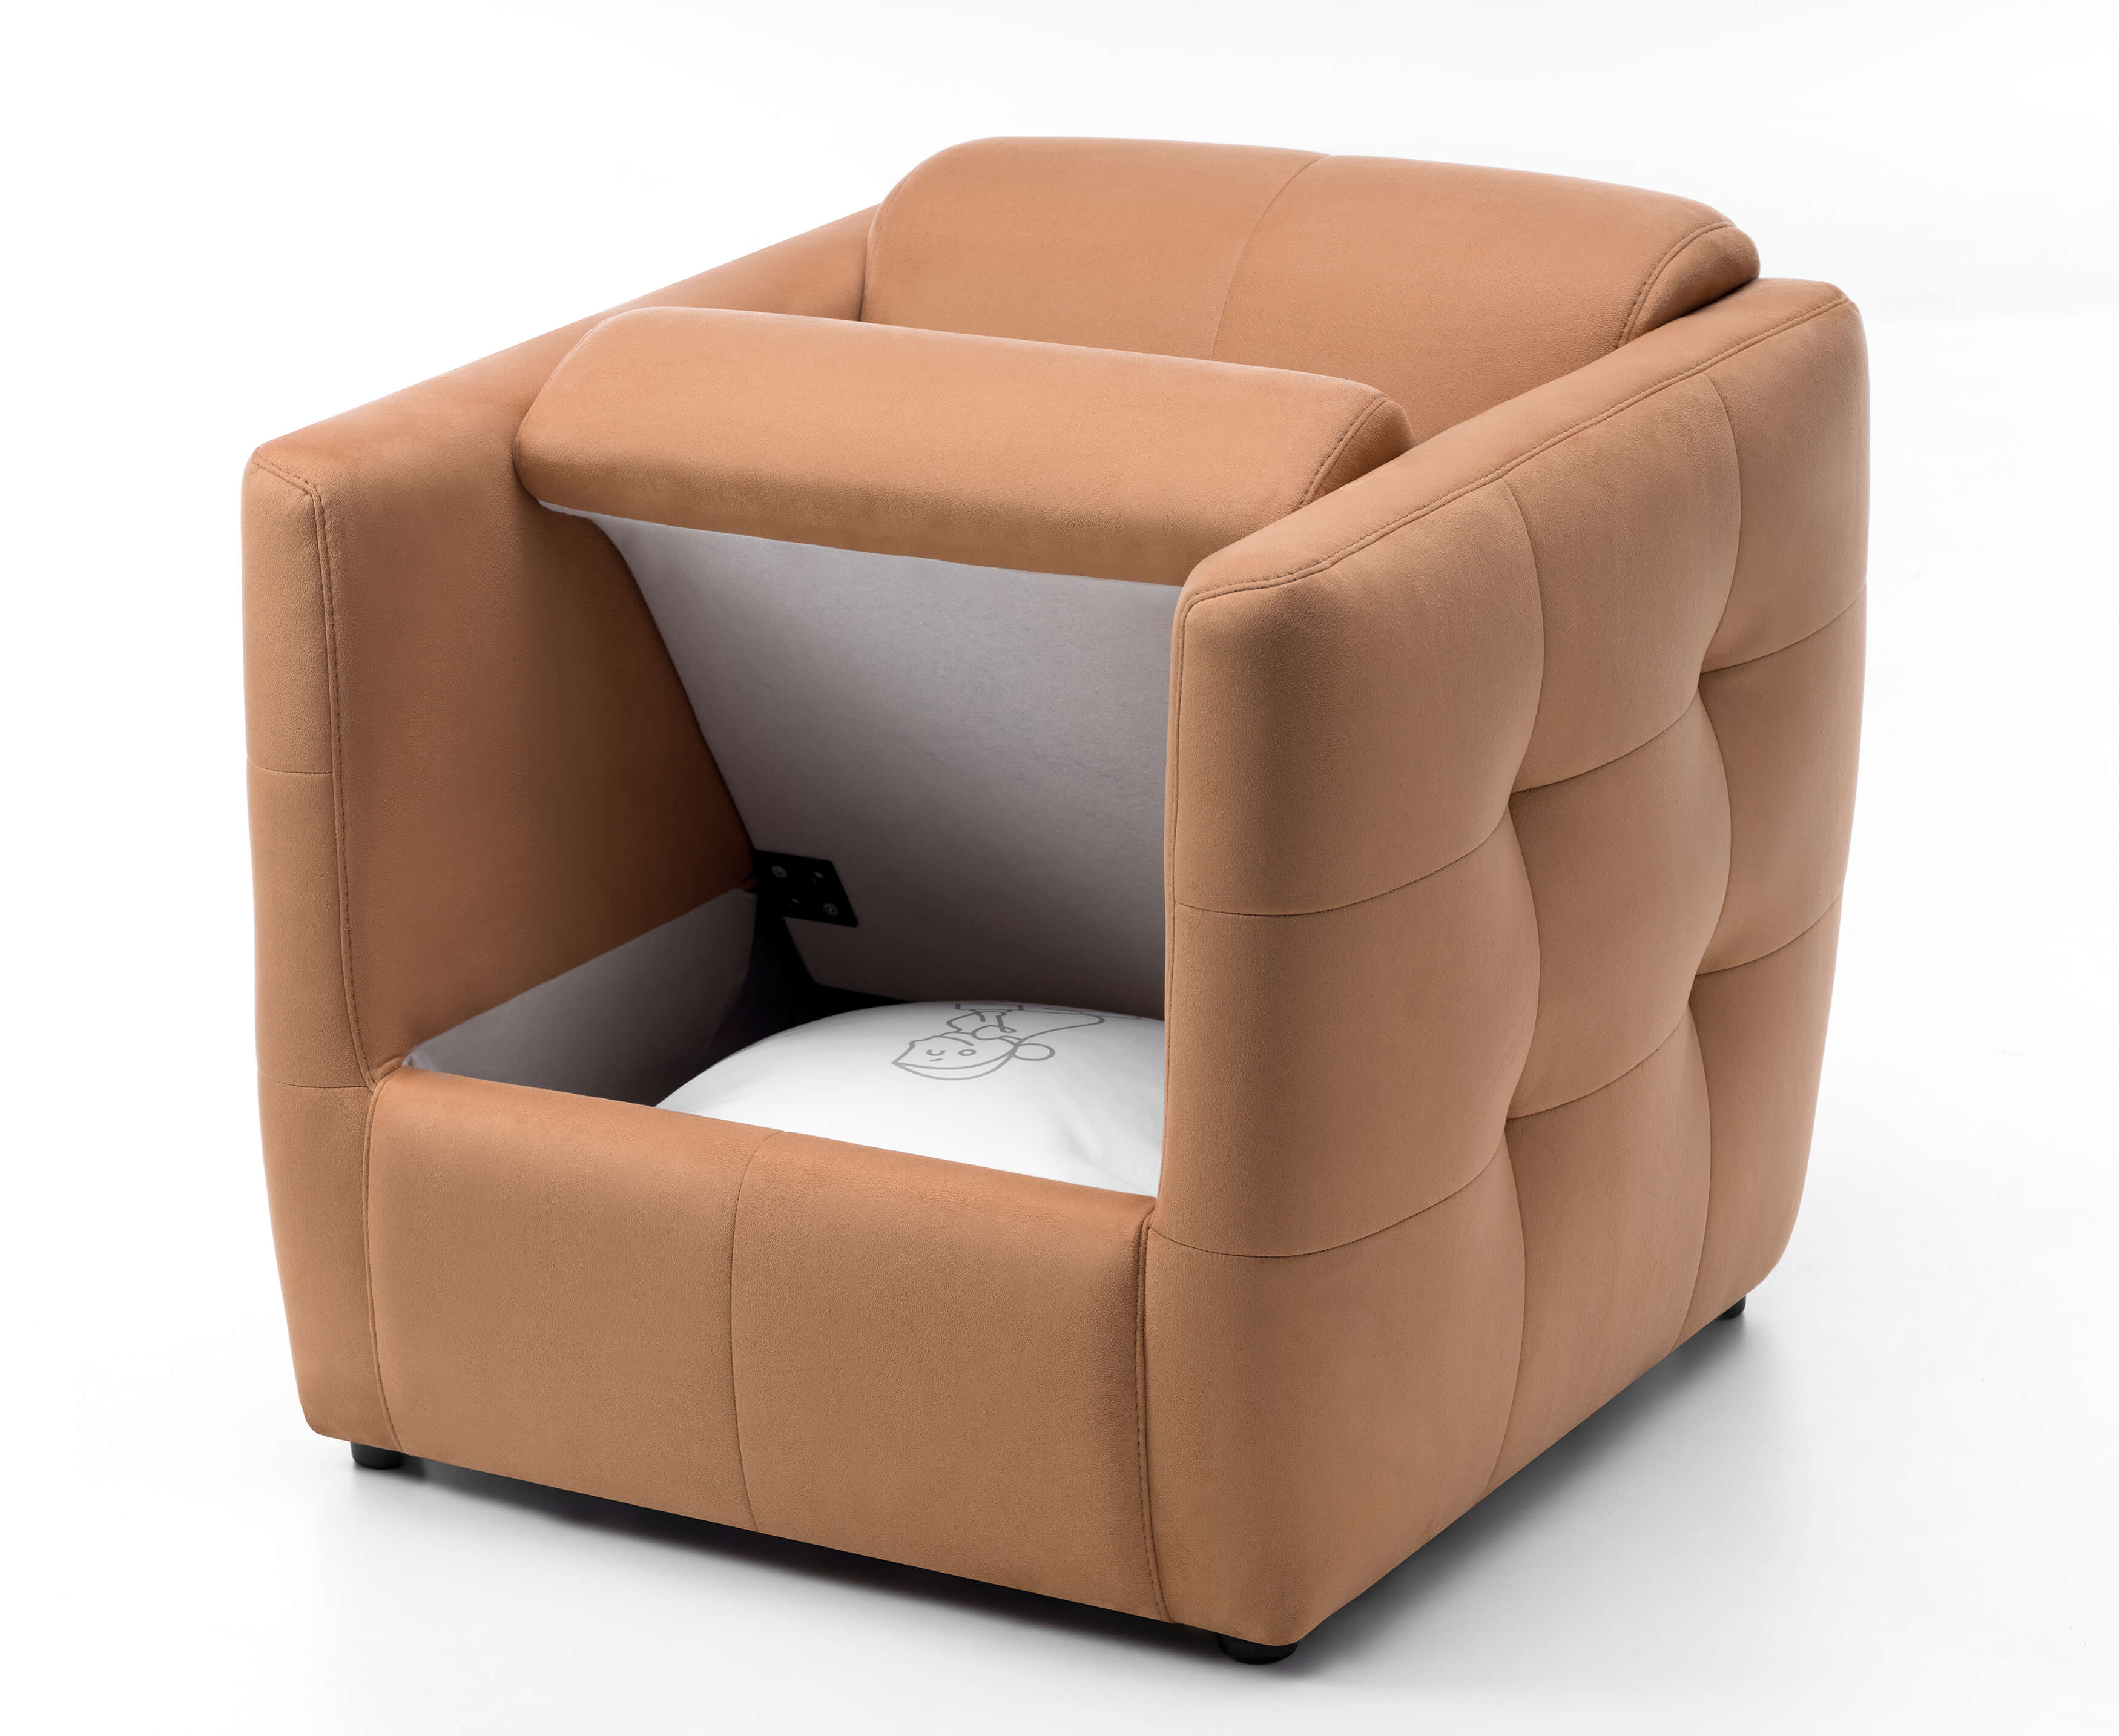 Кресла небольших размеров для маленьких комнат: кресло-кровать, компактное кресло, как выбрать